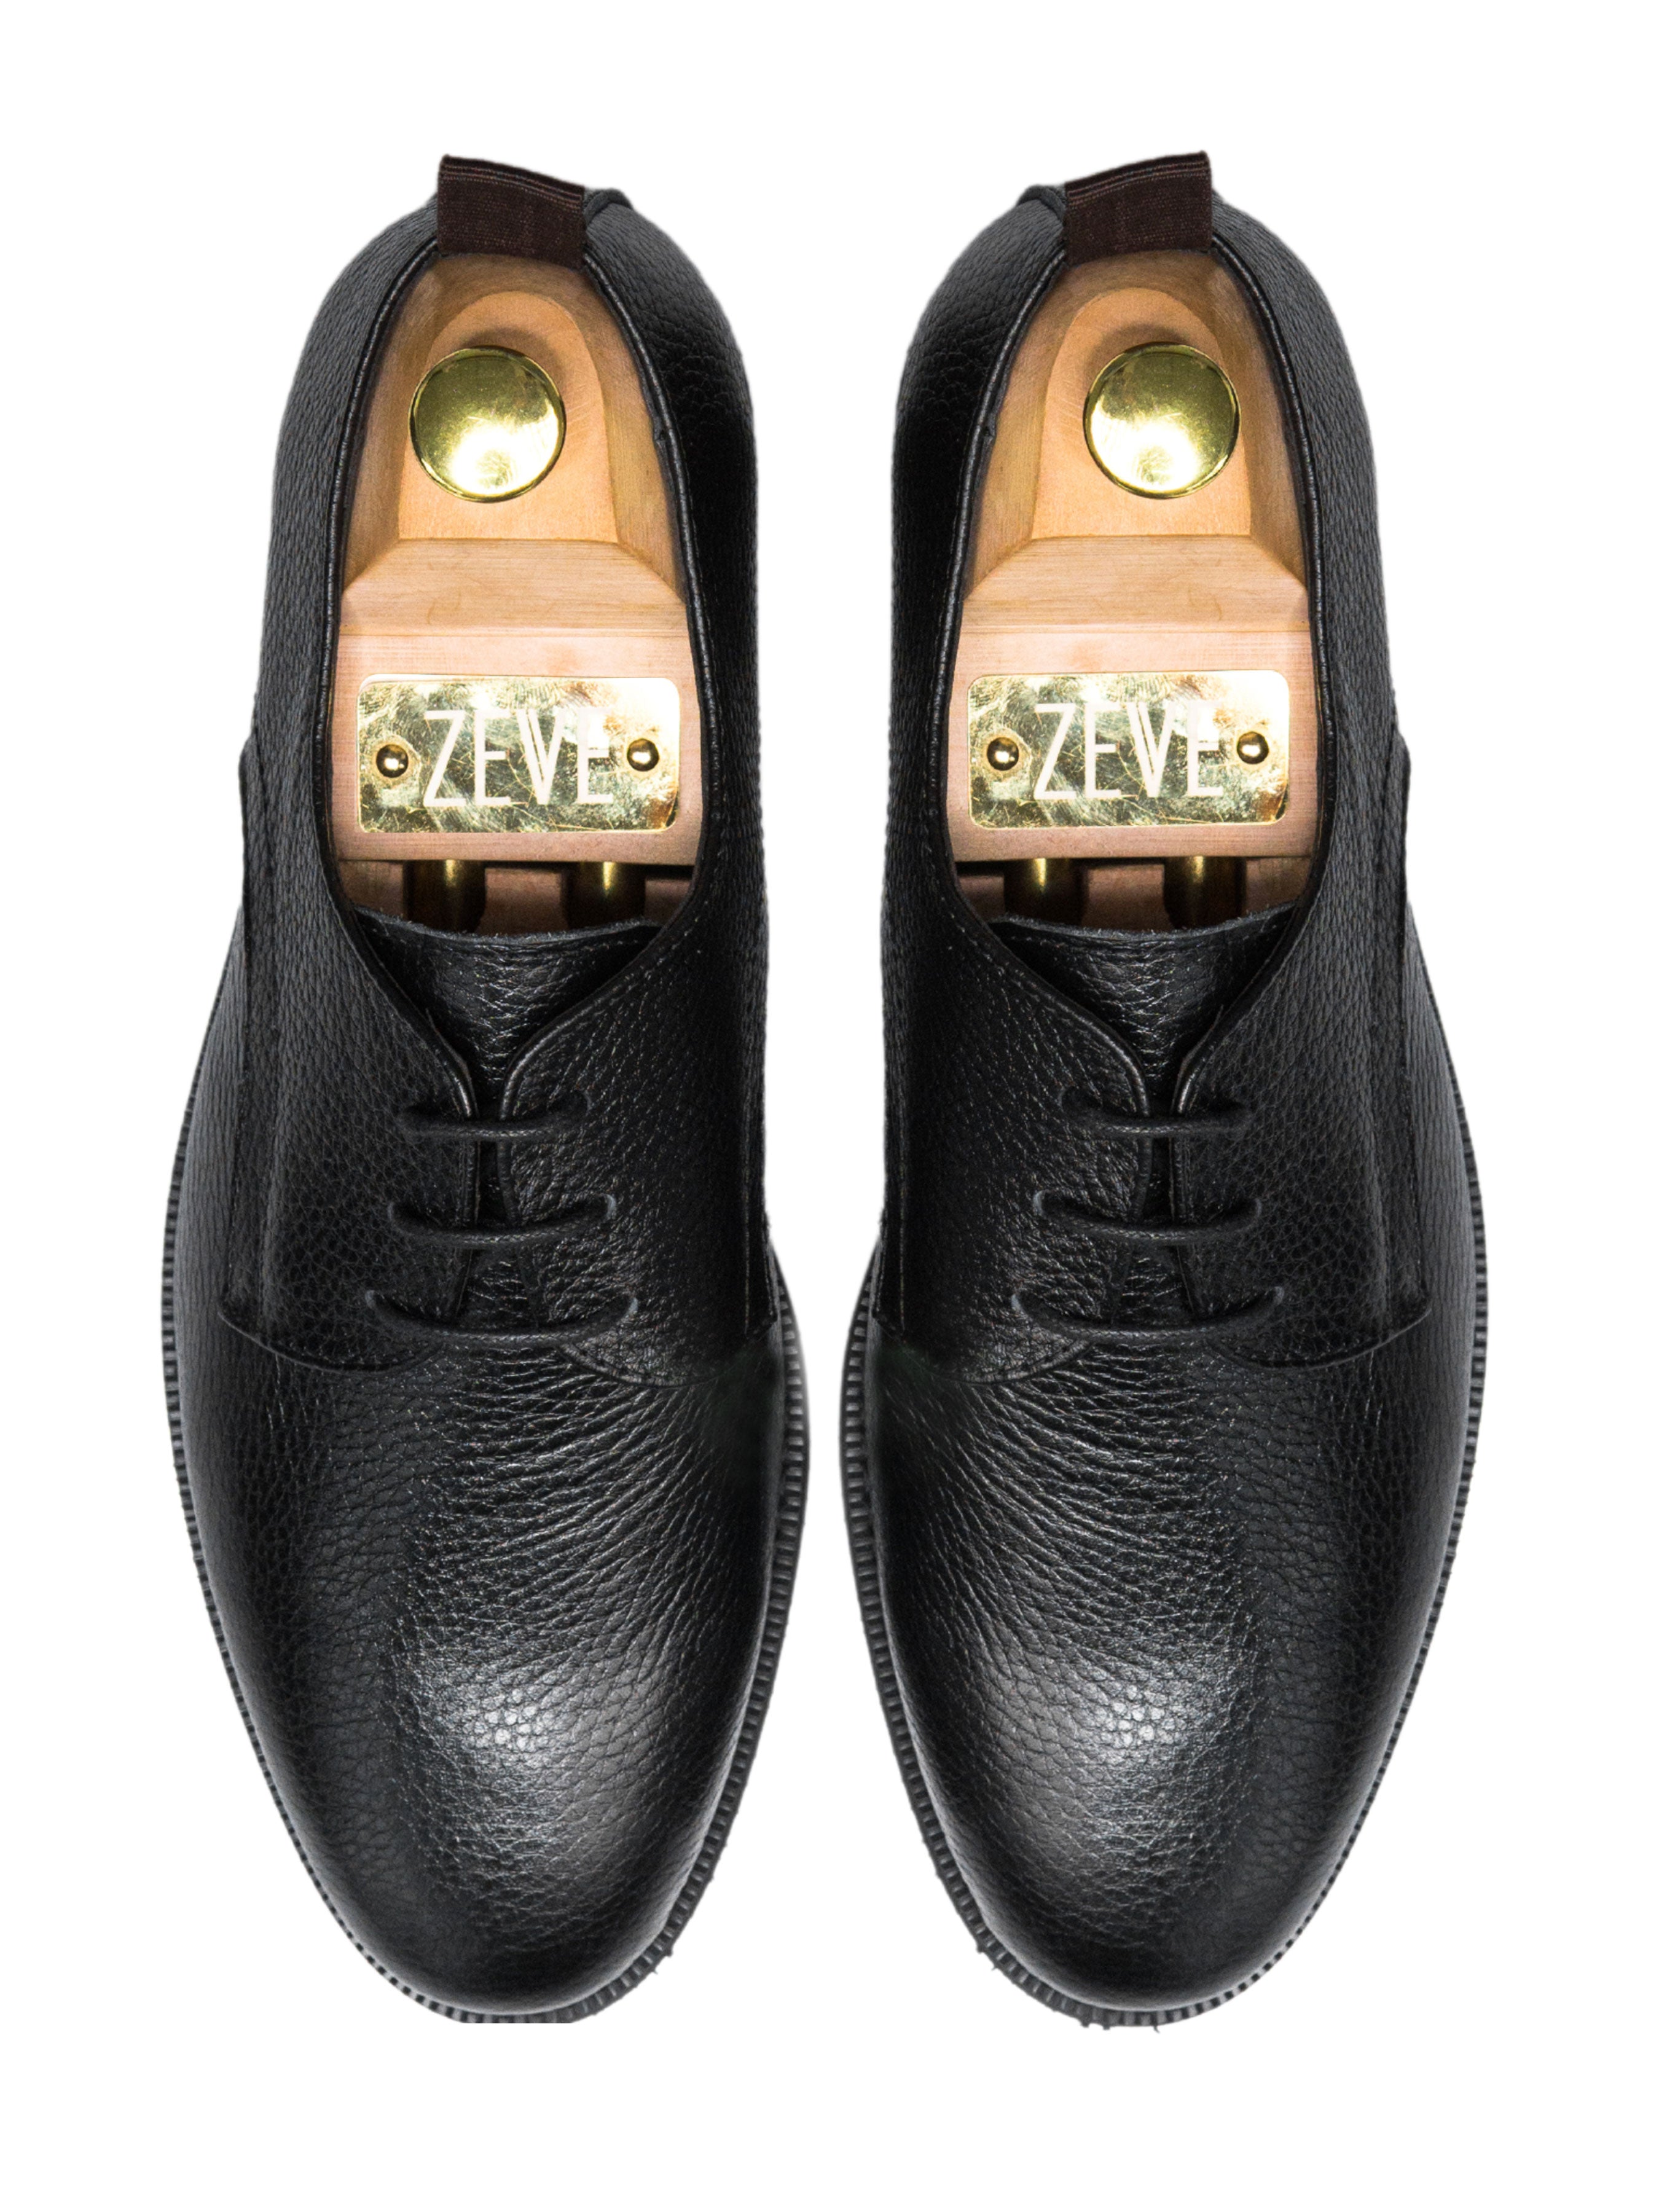 Derby Lace Up - Black Pebble Grain Leather (Crepe Sole) - Zeve Shoes